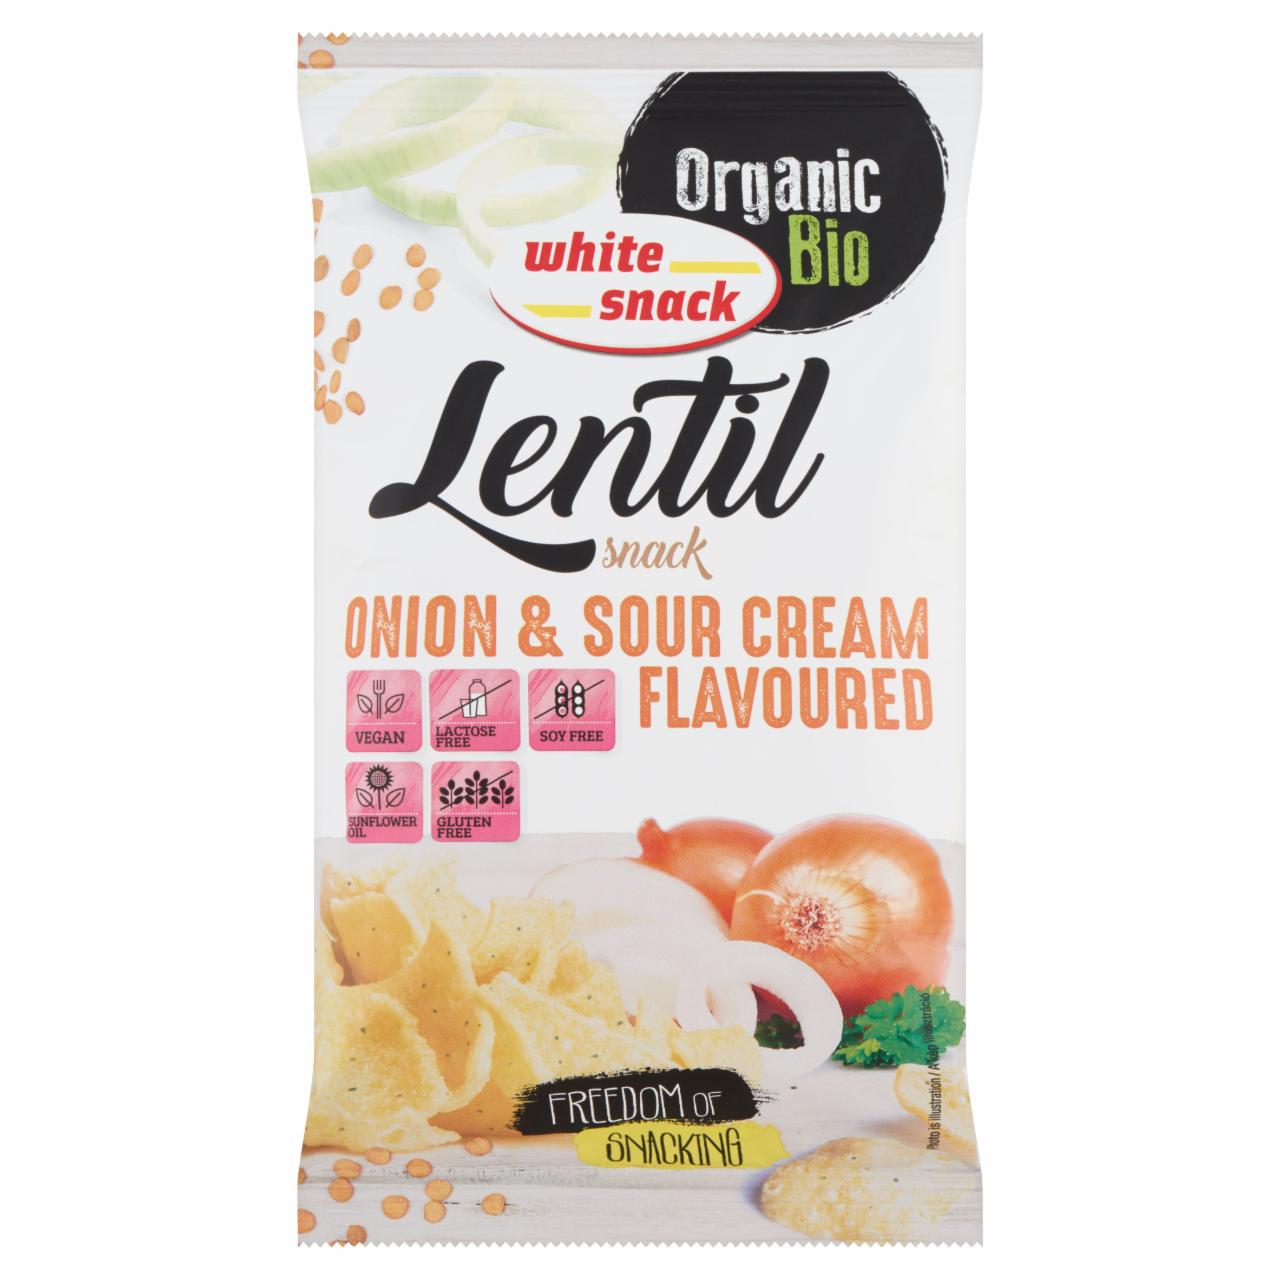 Képek - White Snack BIO hagymás-tejfölös ízű lencse snack 45 g